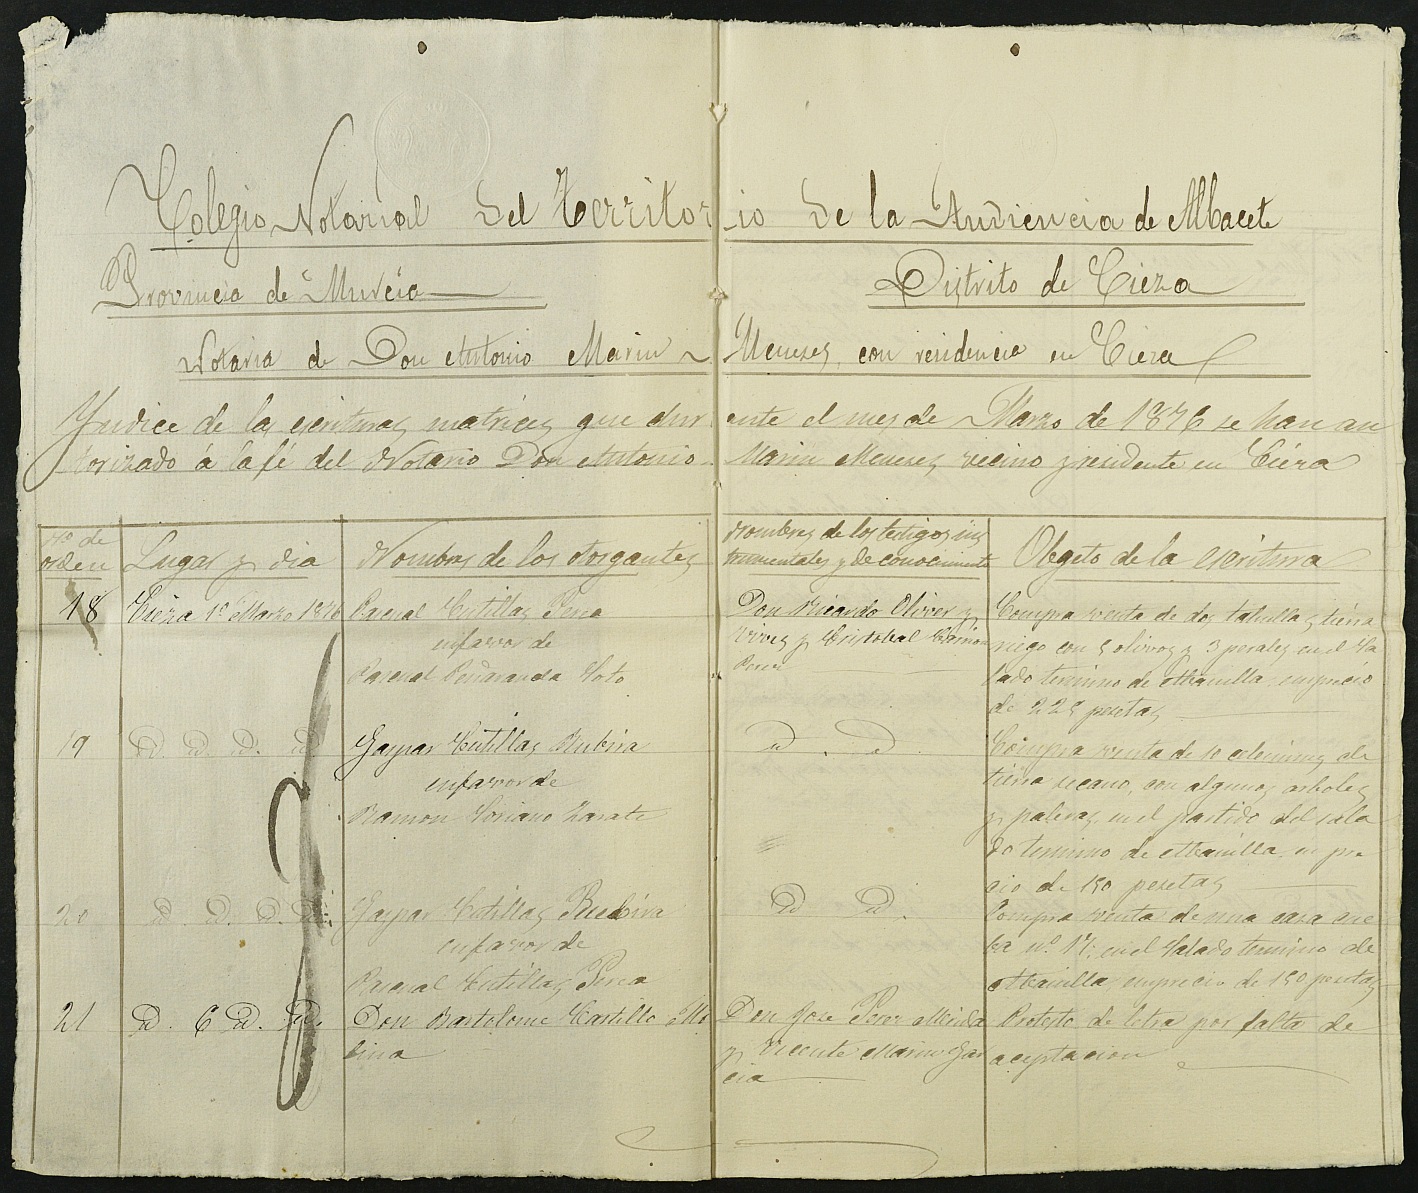 Índices del notario de Cieza Antonio Marin Meneses del año 1876.